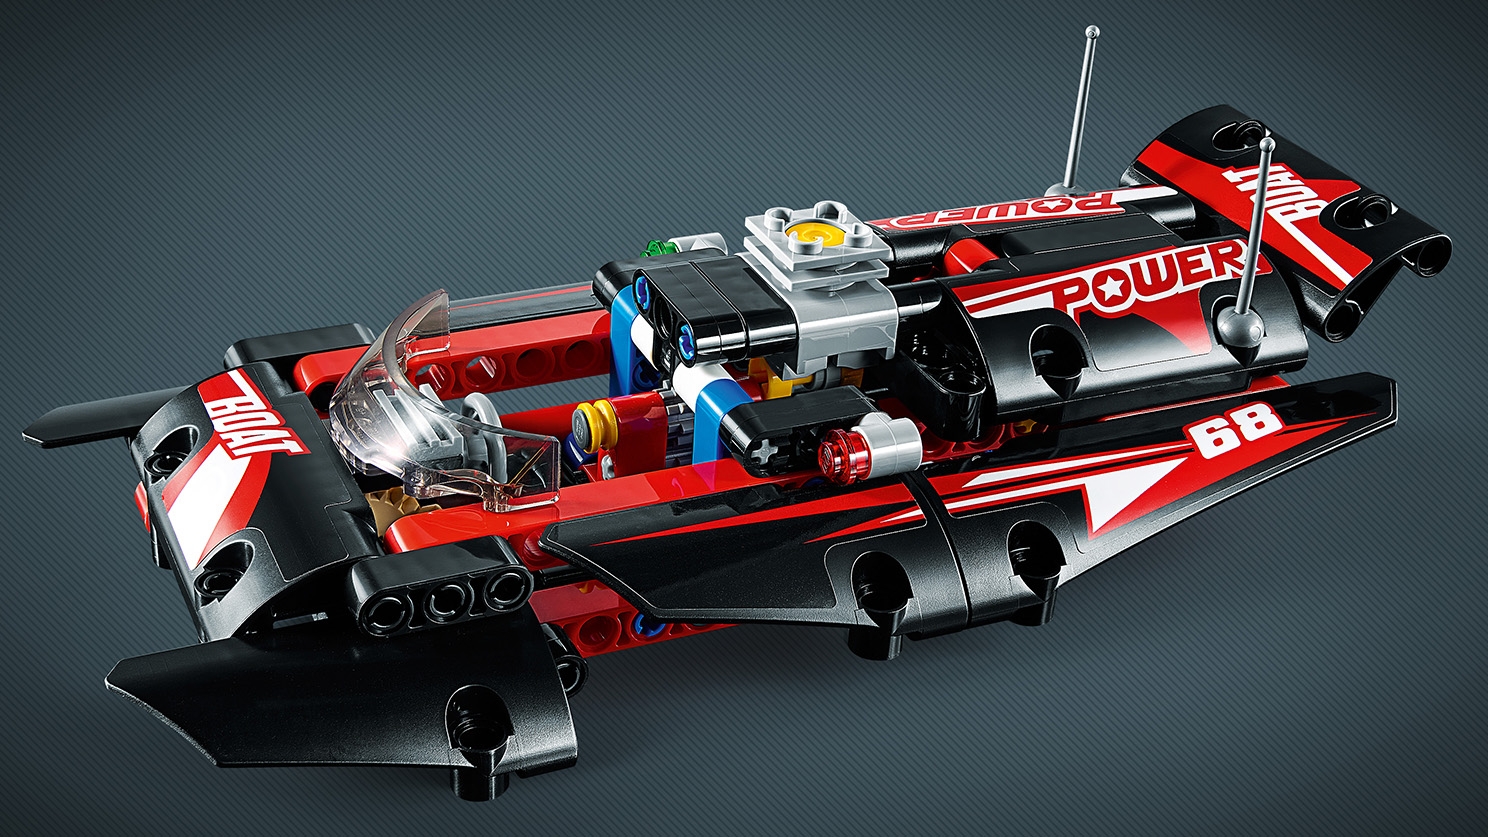 udvide Barcelona dyb Power Boat 42089 - LEGO® Technic Sets - LEGO.com for kids